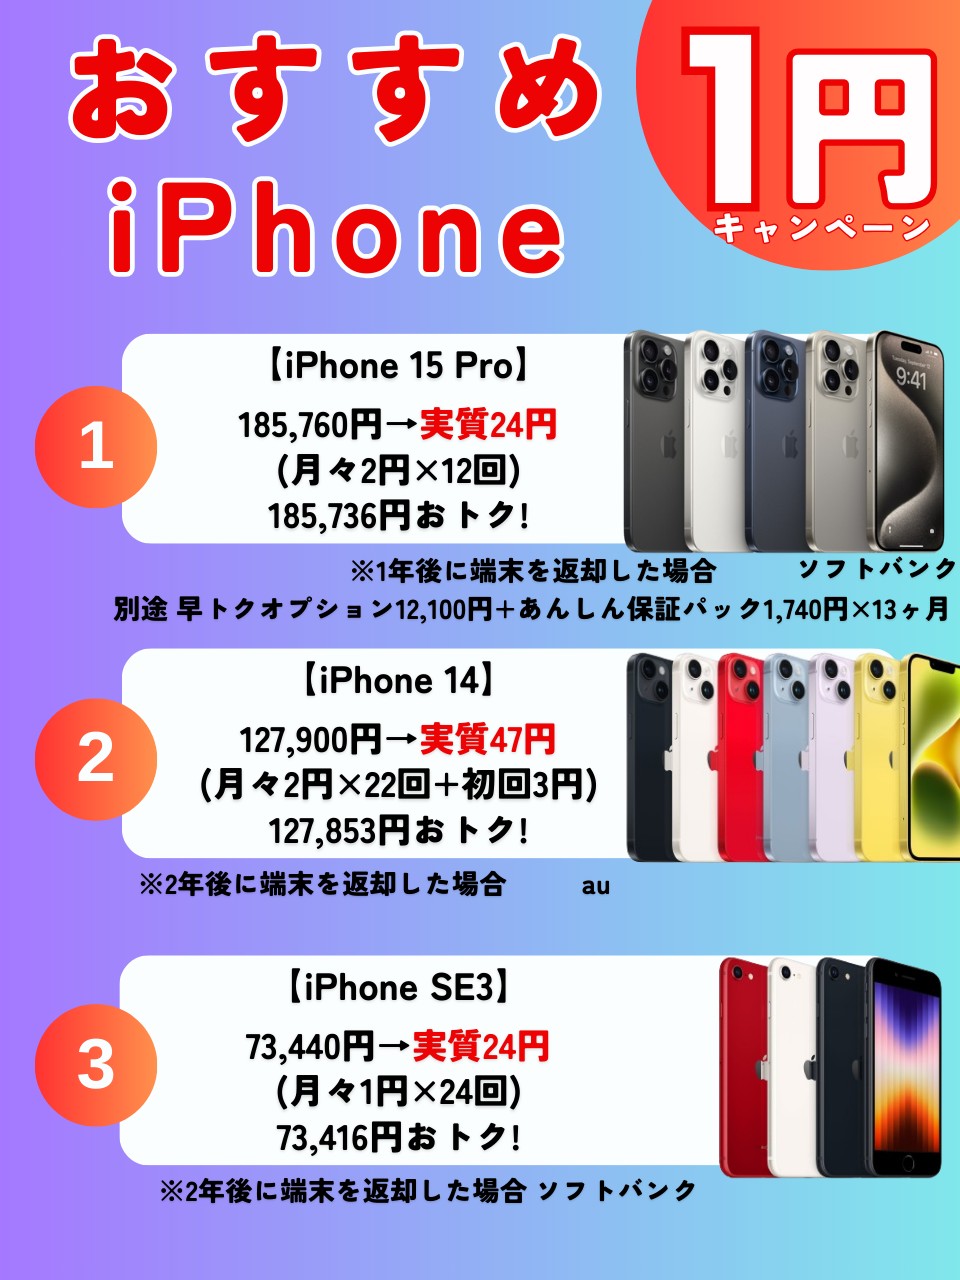 1円iPhone campaign(2)